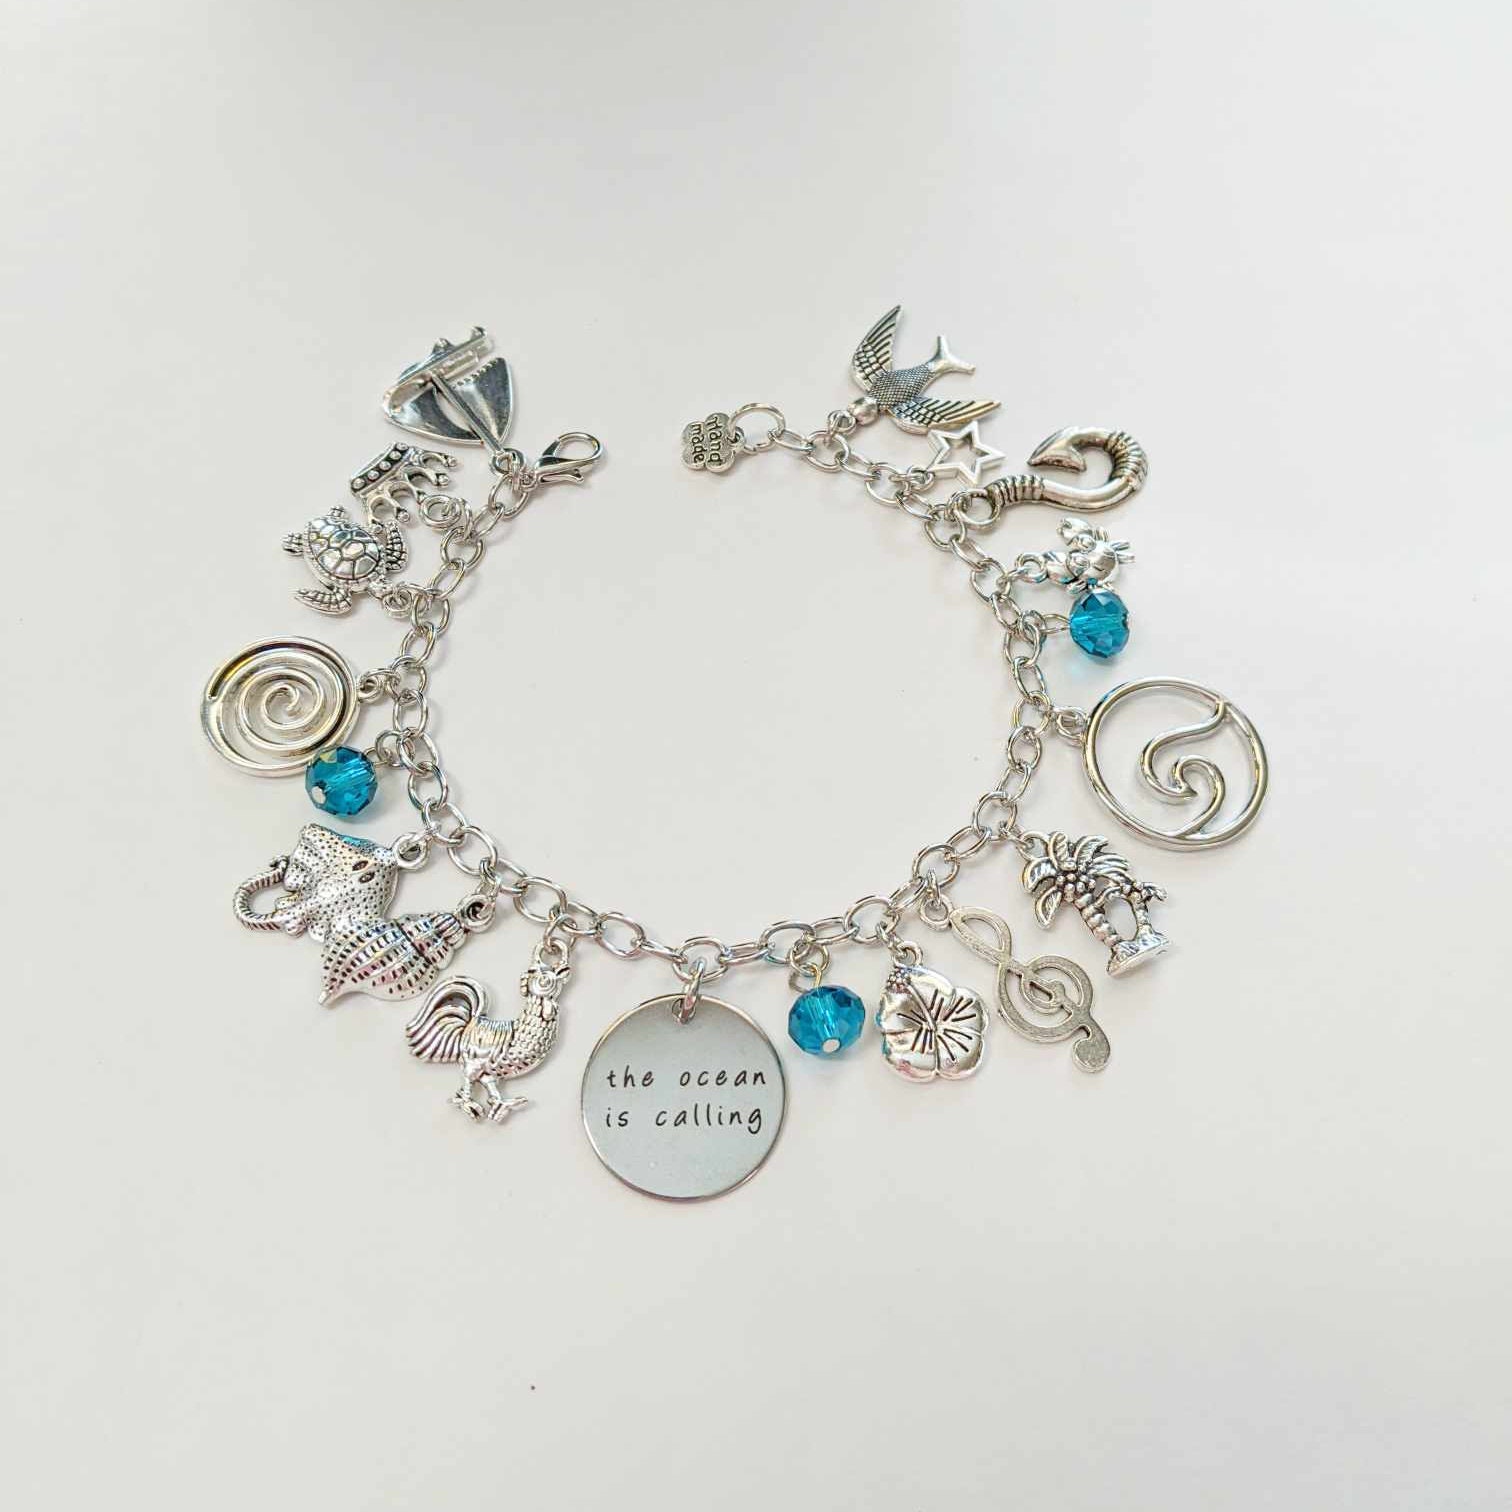 Moana Inspired Charm Bracelet, Disney Moana Inspired Charm Bracelet, Moana  Jewelry, Disney Princess Jewelry